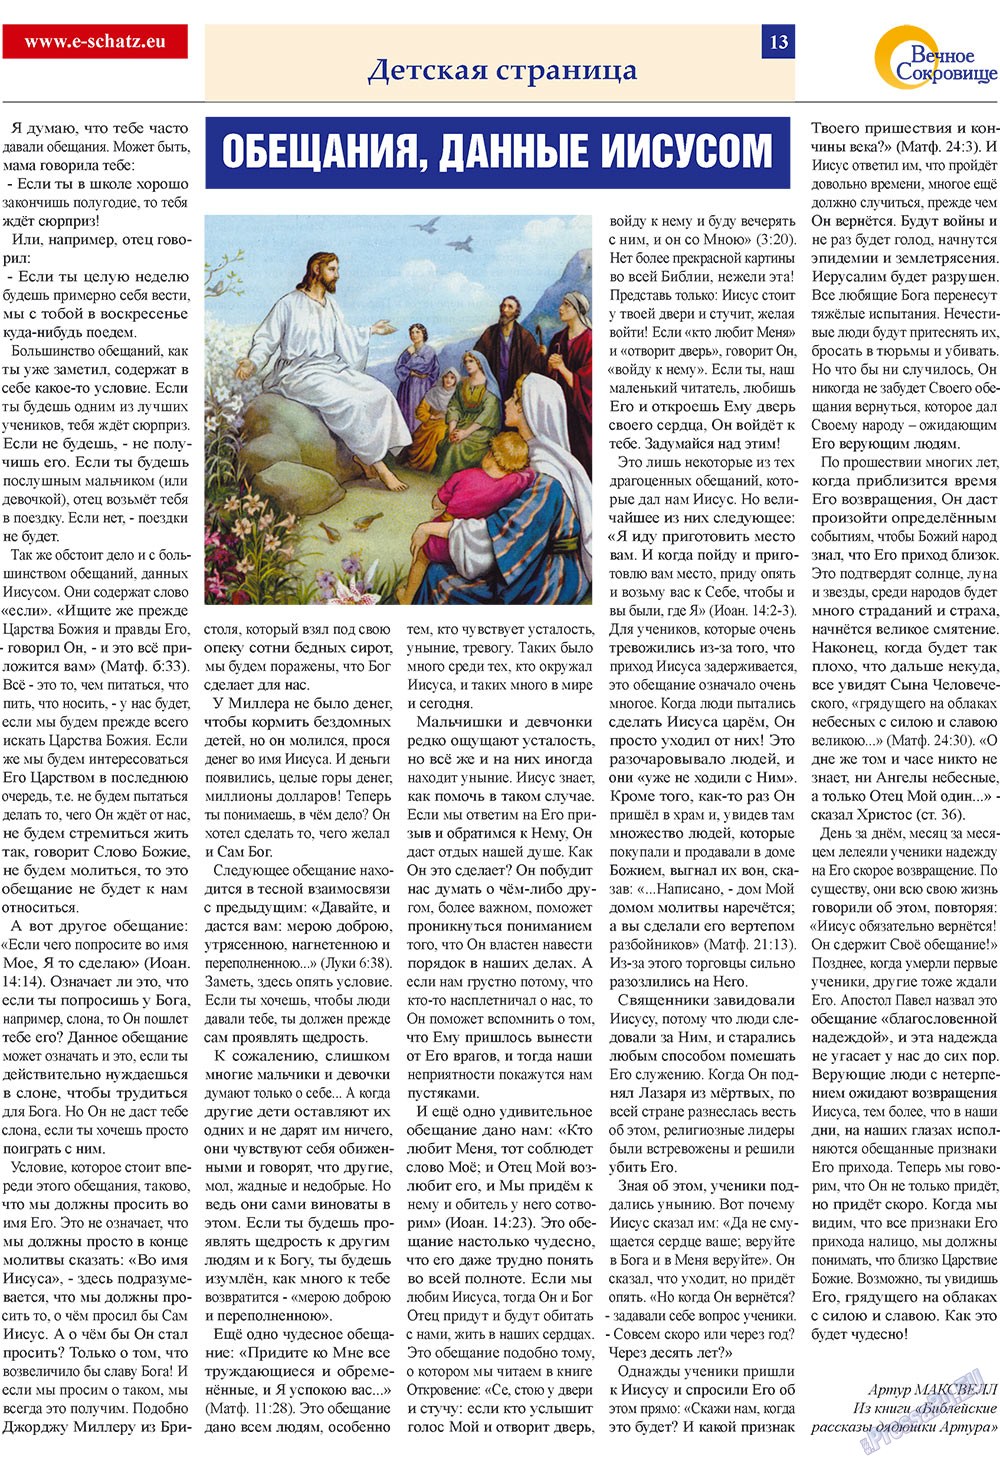 Вечное сокровище (газета). 2009 год, номер 2, стр. 13